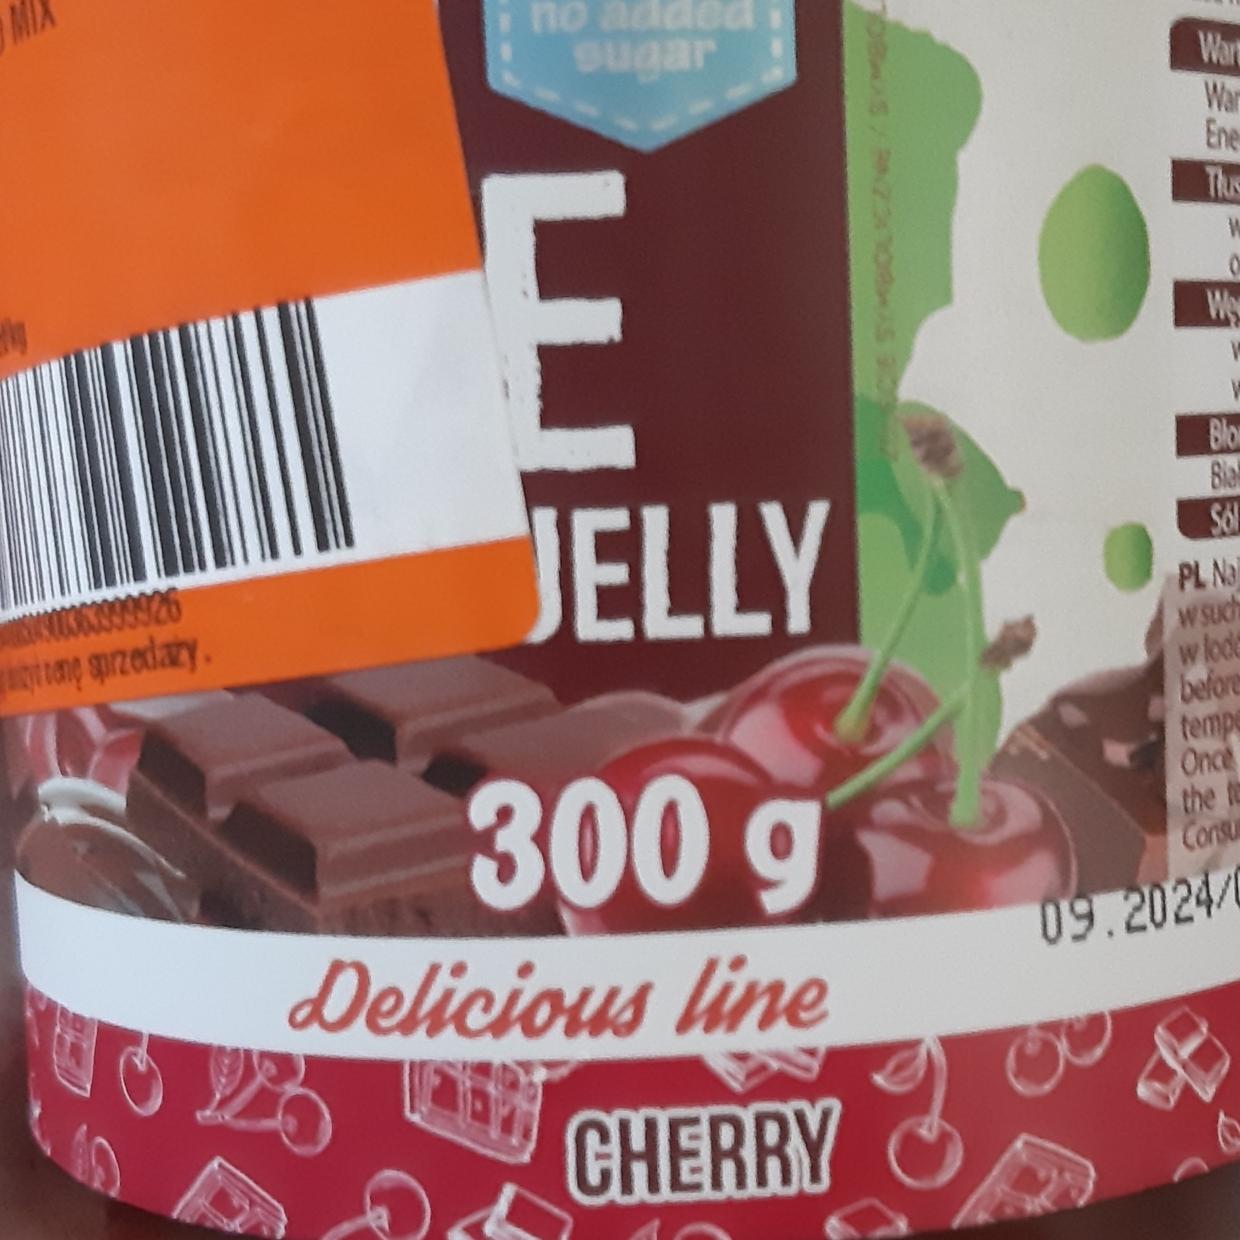 Zdjęcia - Frulove choco in jelly cherry Allnutrition